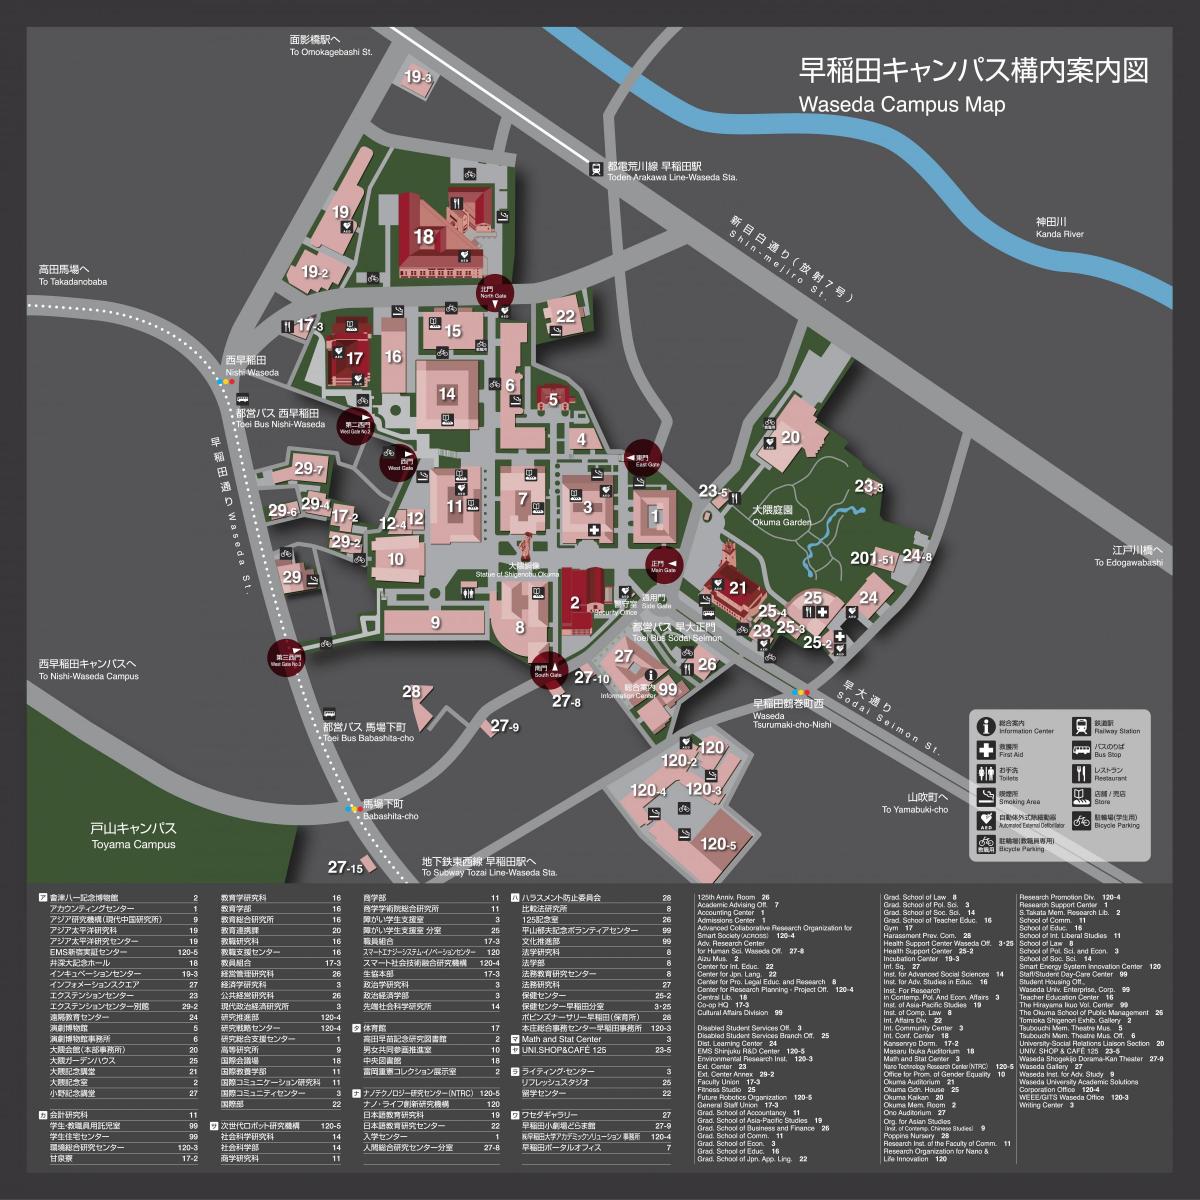 uniwersytet waseda campus mapa